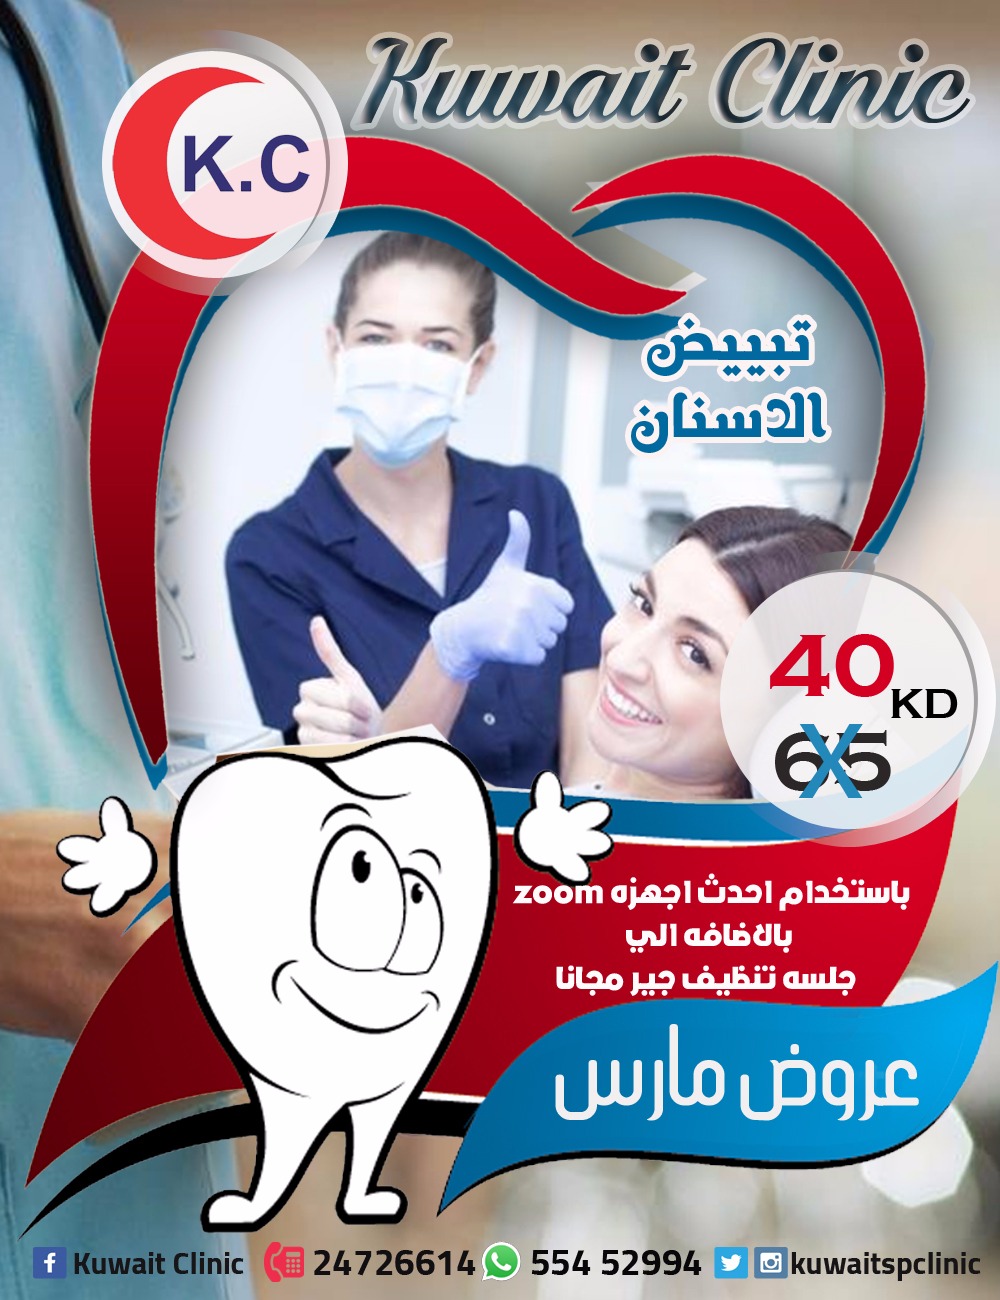 خدمات مستوصف الكويت التخصصي | أفضل مركز طبي في الكويت  3